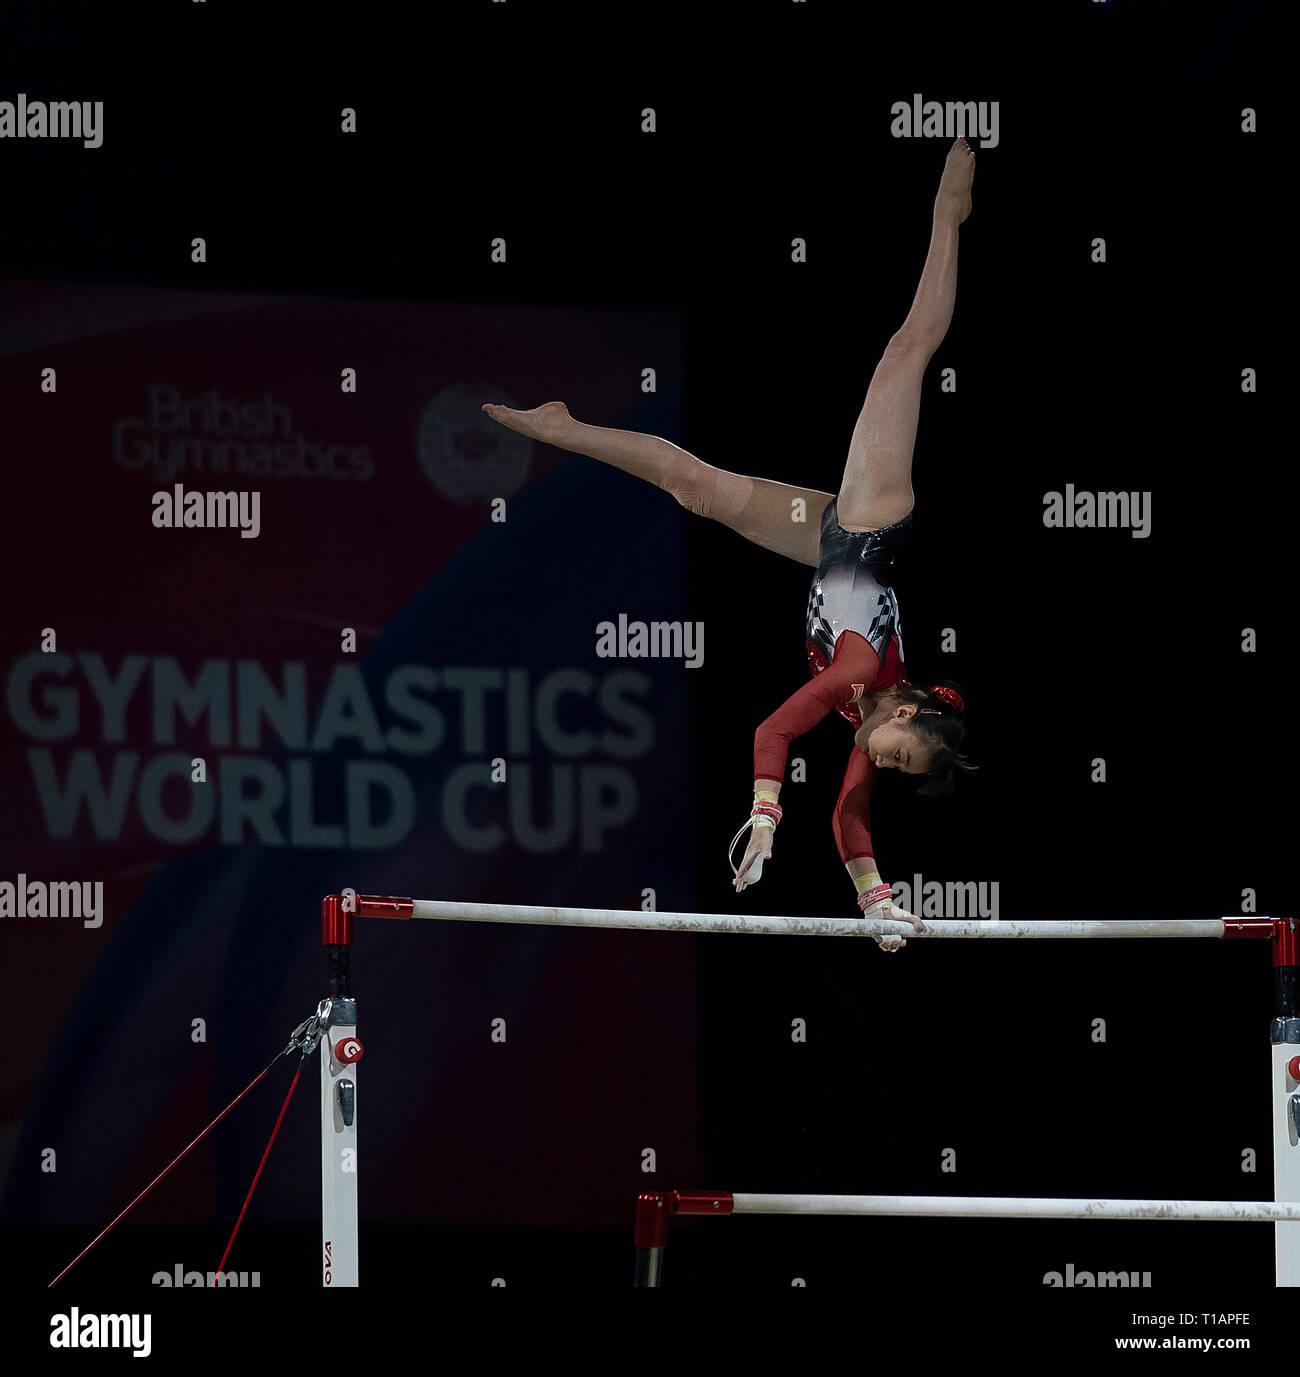 Nagi Kajita (Japon) vu en action lors de la Coupe du Monde de Gymnastique 2019 à Birmingham dans l'Arène de Genting. Banque D'Images